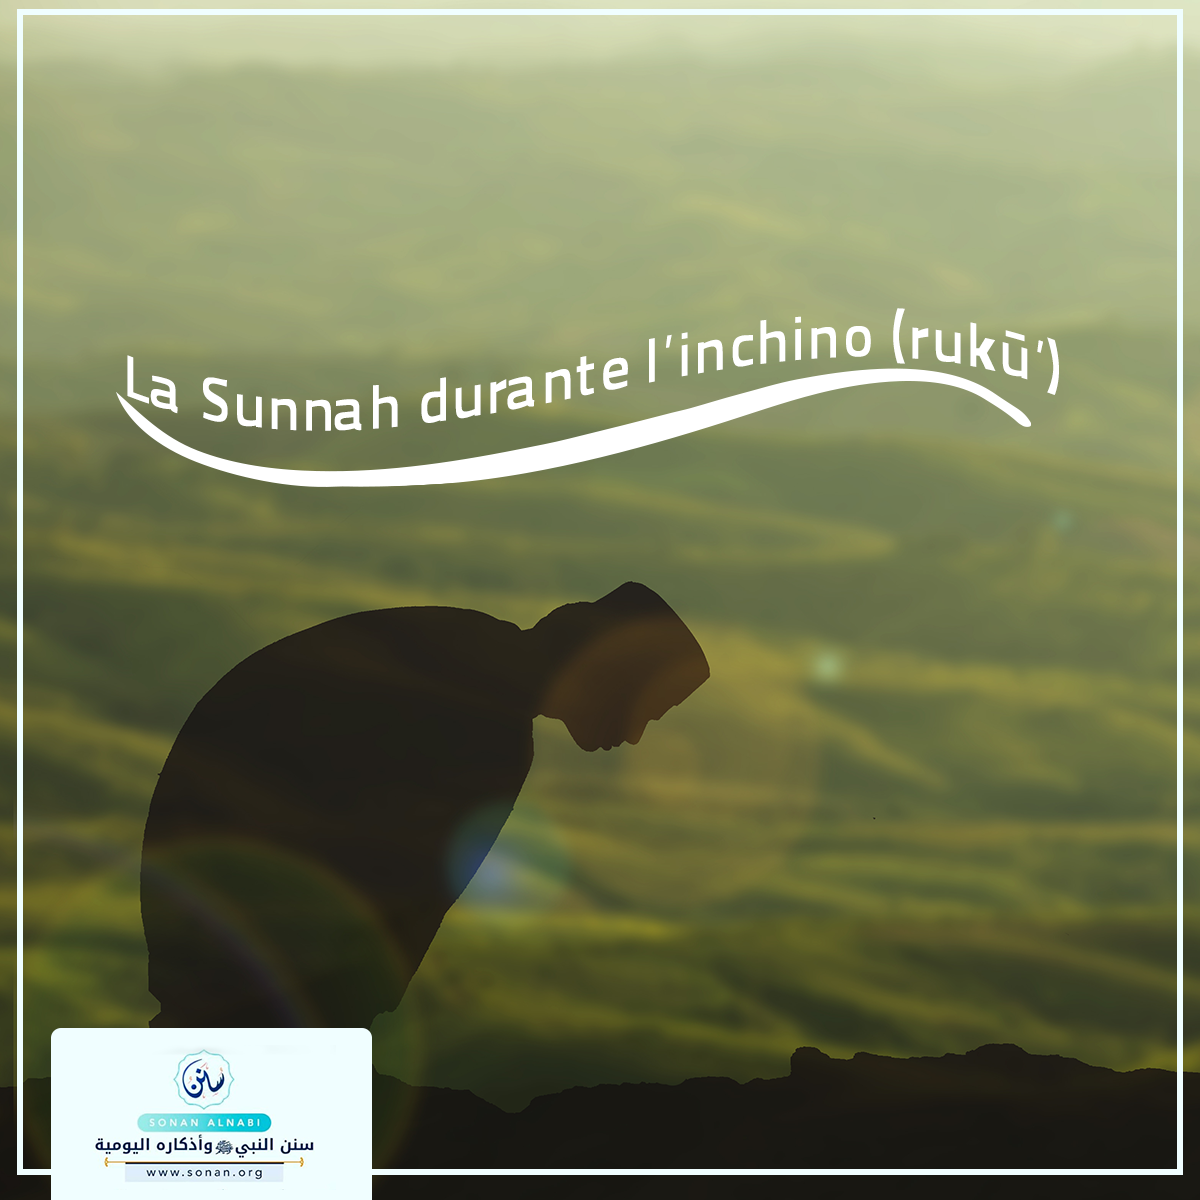 La Sunnah durante l’inchino (rukū’)